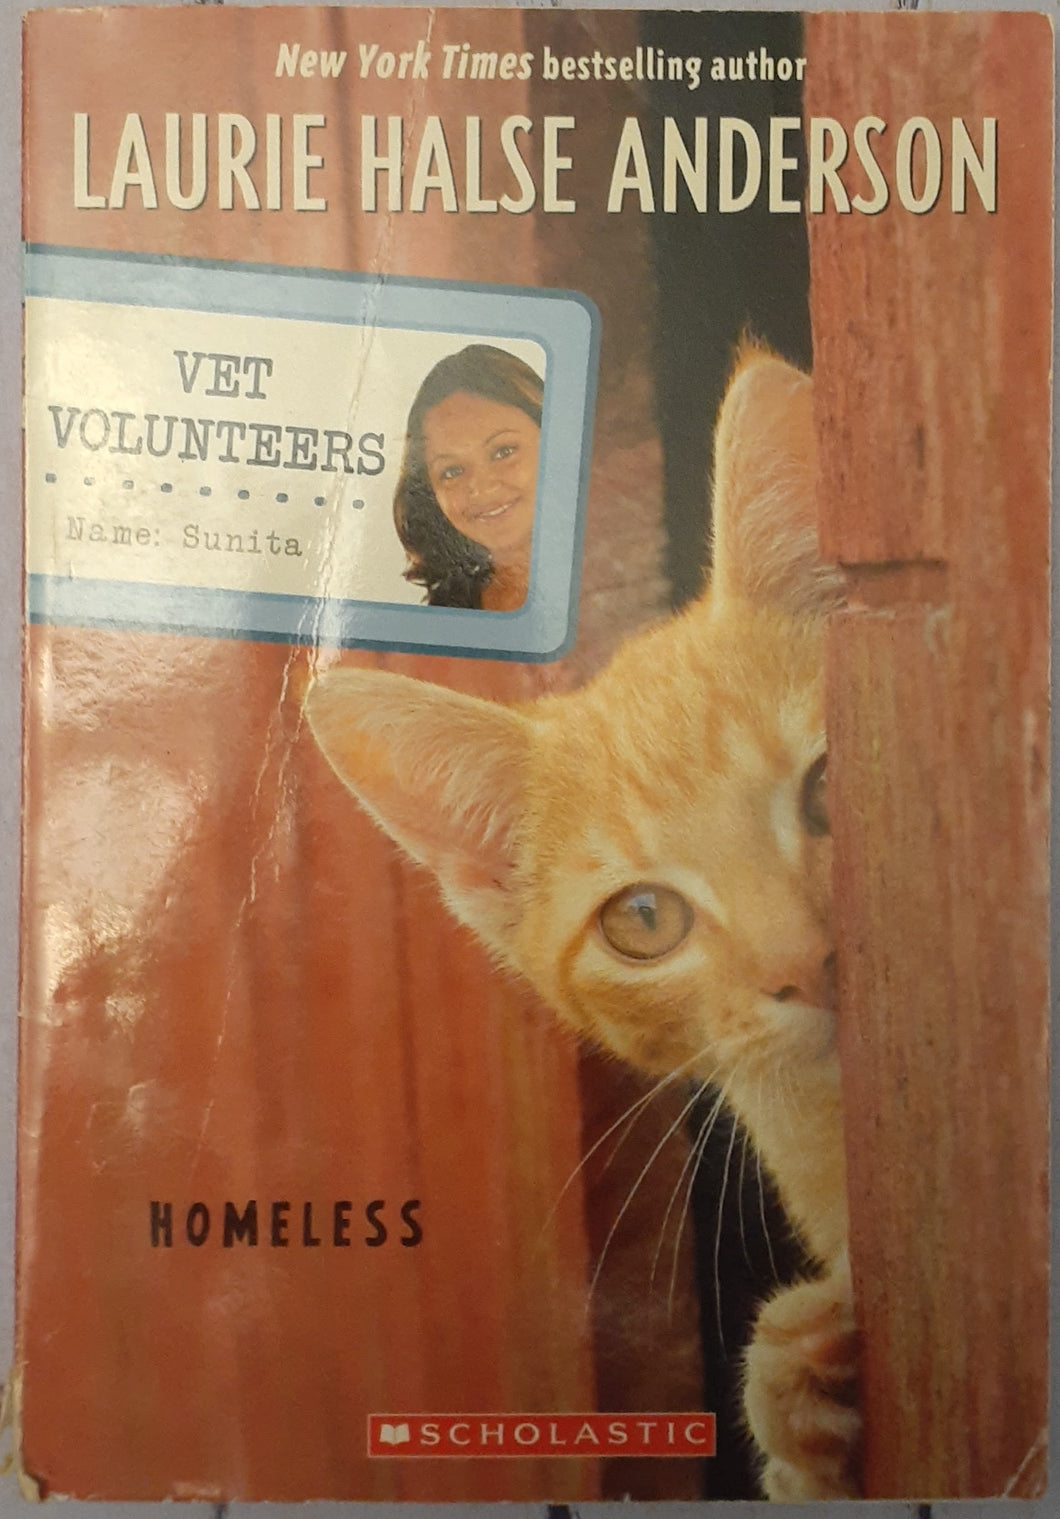 Vet Volunteers - Homeless